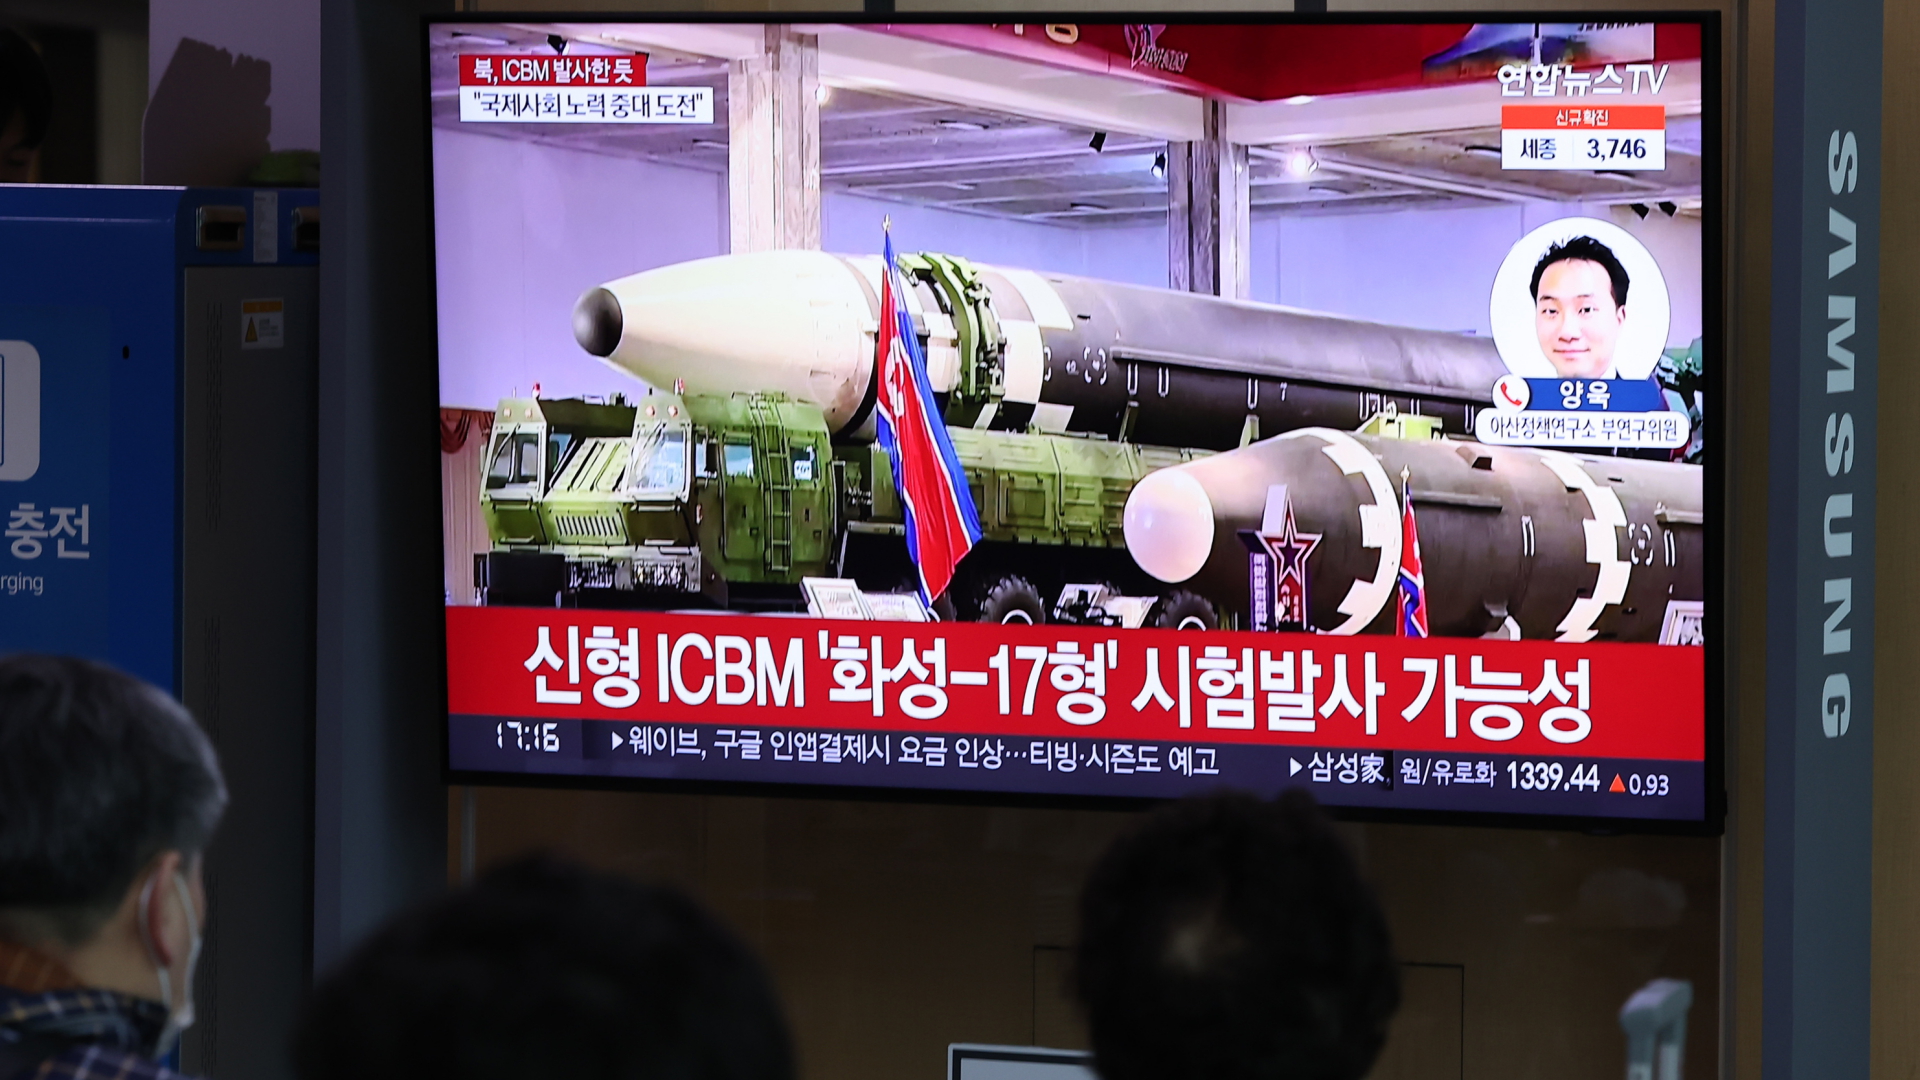 Menschen verfolgen am Bahnhof von Seoul einen Fernsehbericht über den Start einer mutmaßlichen ballistischen Interkontinentalrakete durch Nordkorea.  | dpa